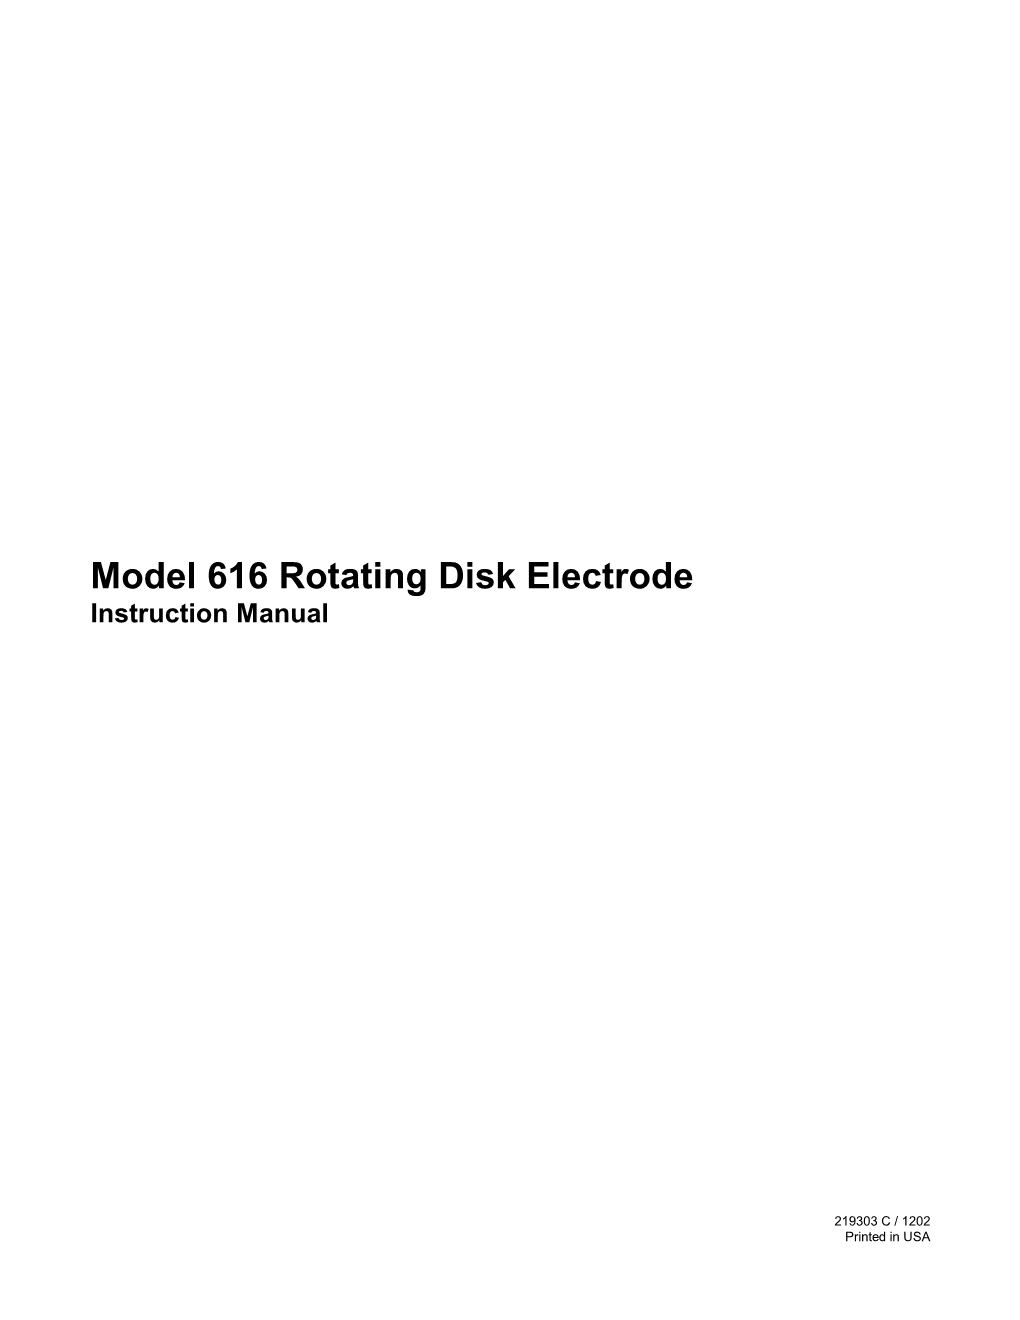 Model 616 Rotating Disk Electrode Instruction Manual